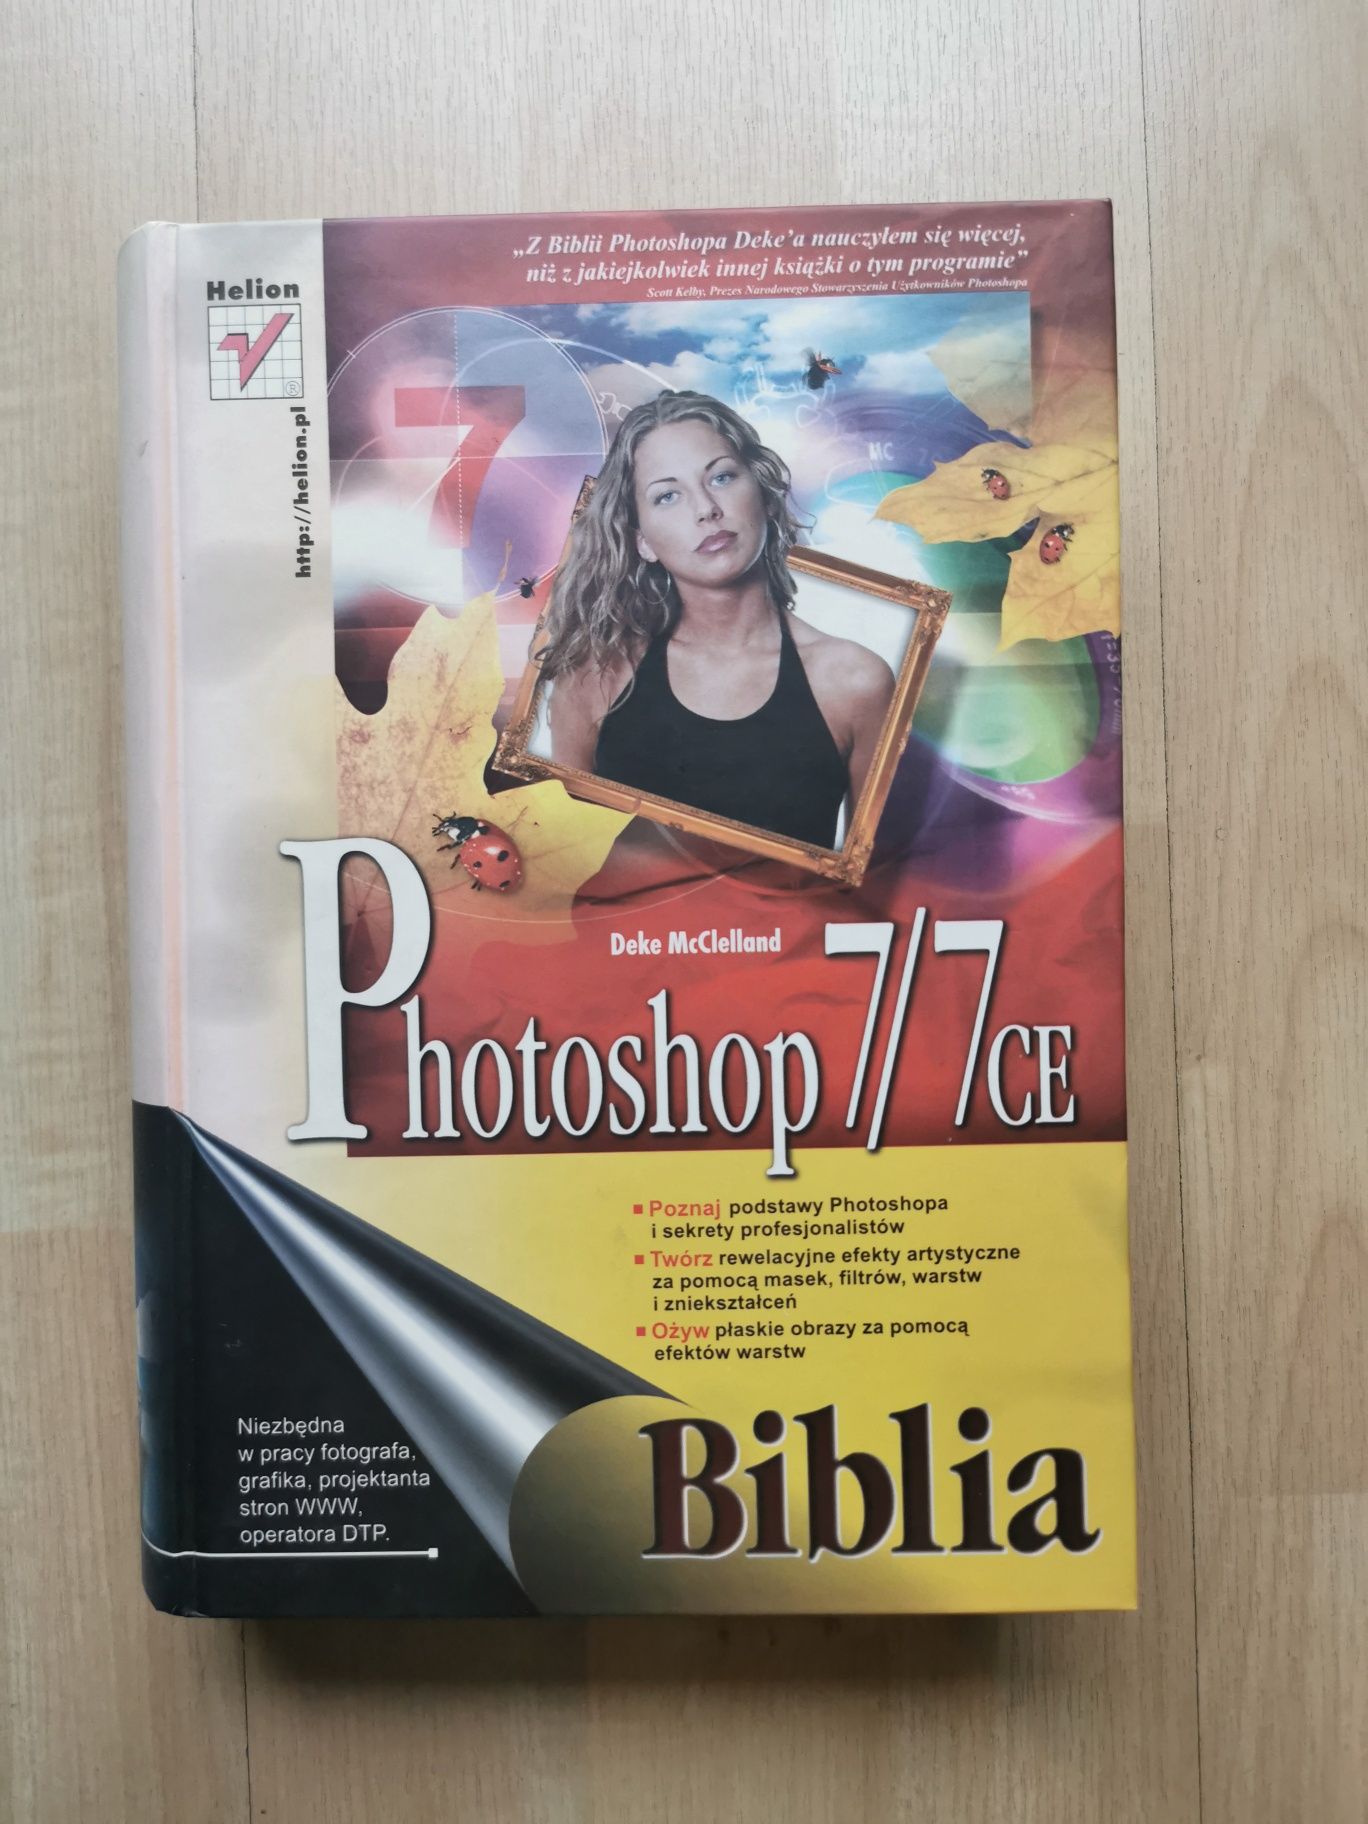 BIBLIA Photoshop 7/7CE twarda oprawa